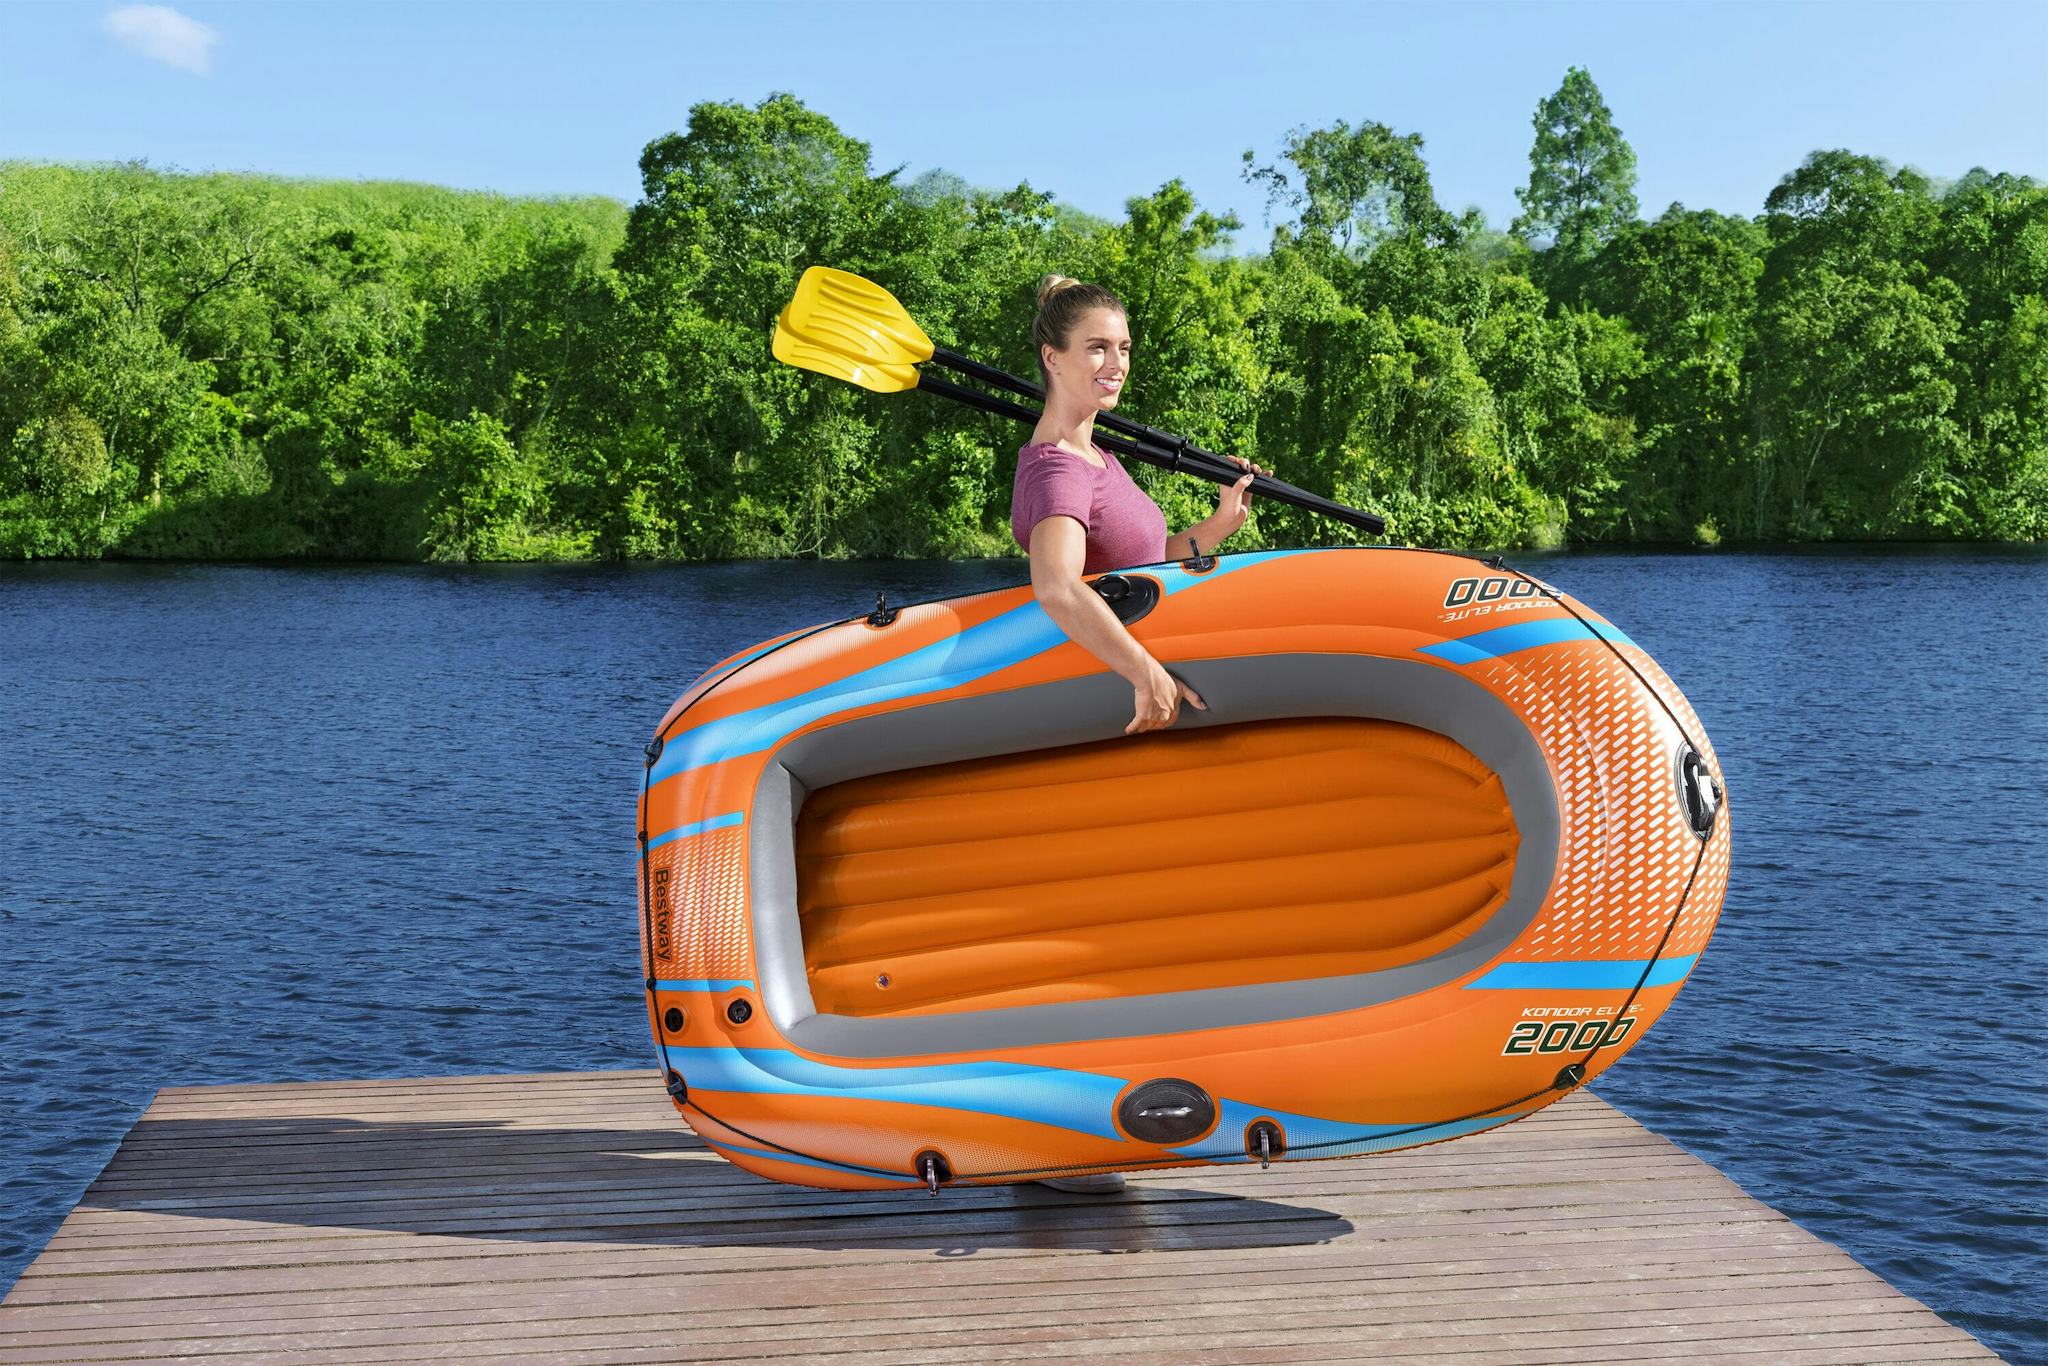 Sports d'eau Bateau gonflable Kondor Elite™ 2000 raft set, 196 x 106 cm, 1 adulte+1enfant, 120kg max, pompe à pied et 2 pagaies Bestway 5